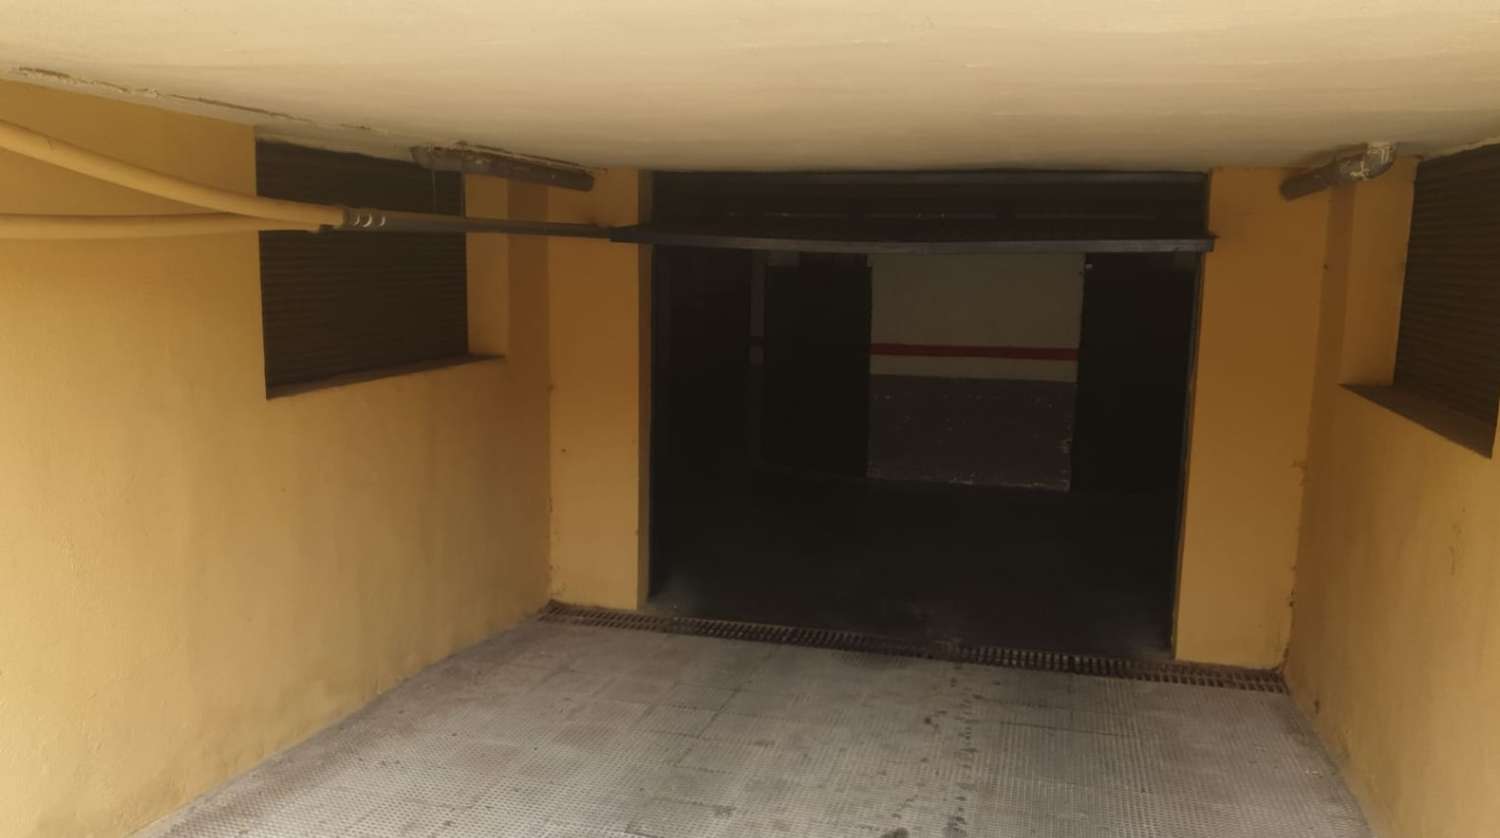 Vendes 75 places de garatges a Churriana Malaga